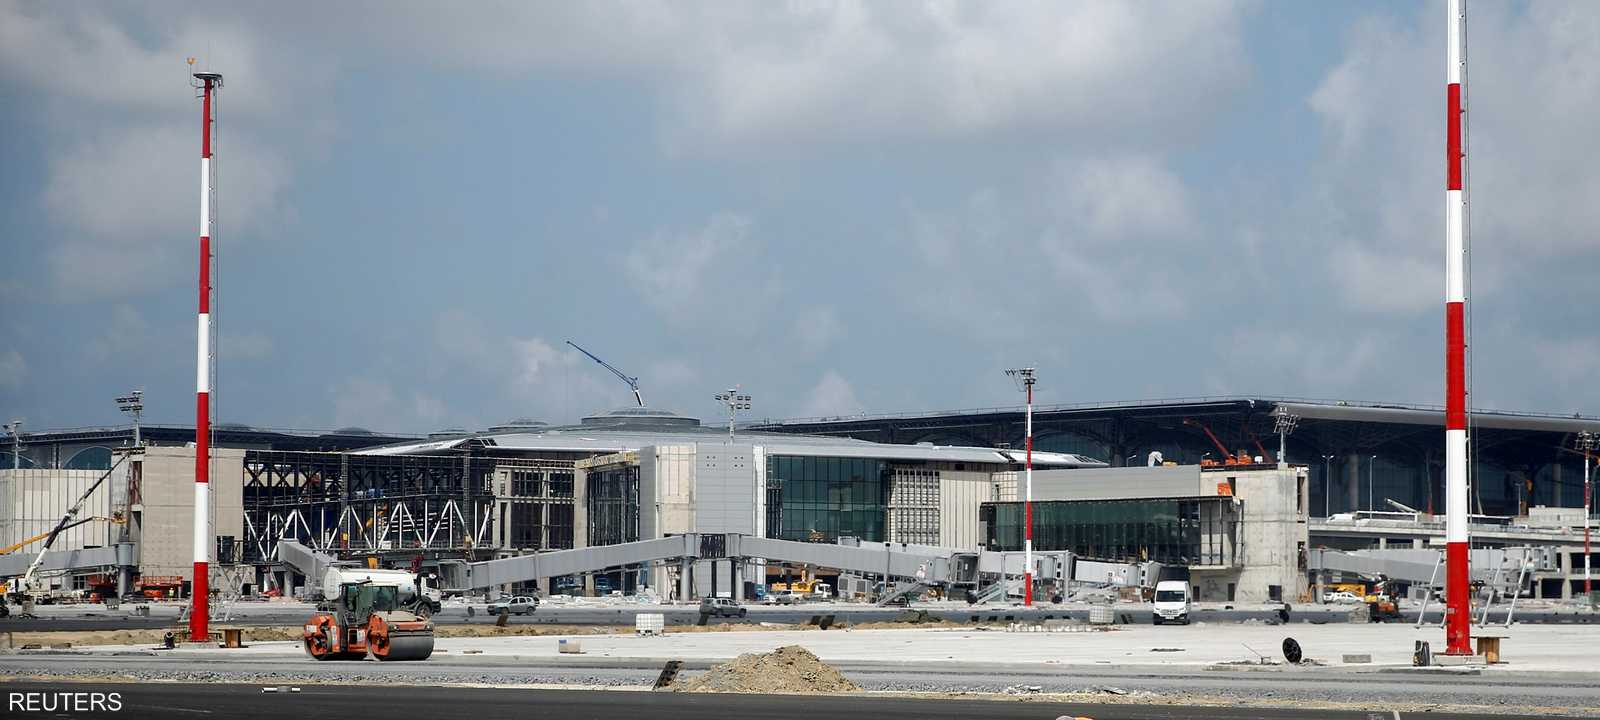 شبهات أثيرت حول مشروع المطار الثالث بإسطنبول